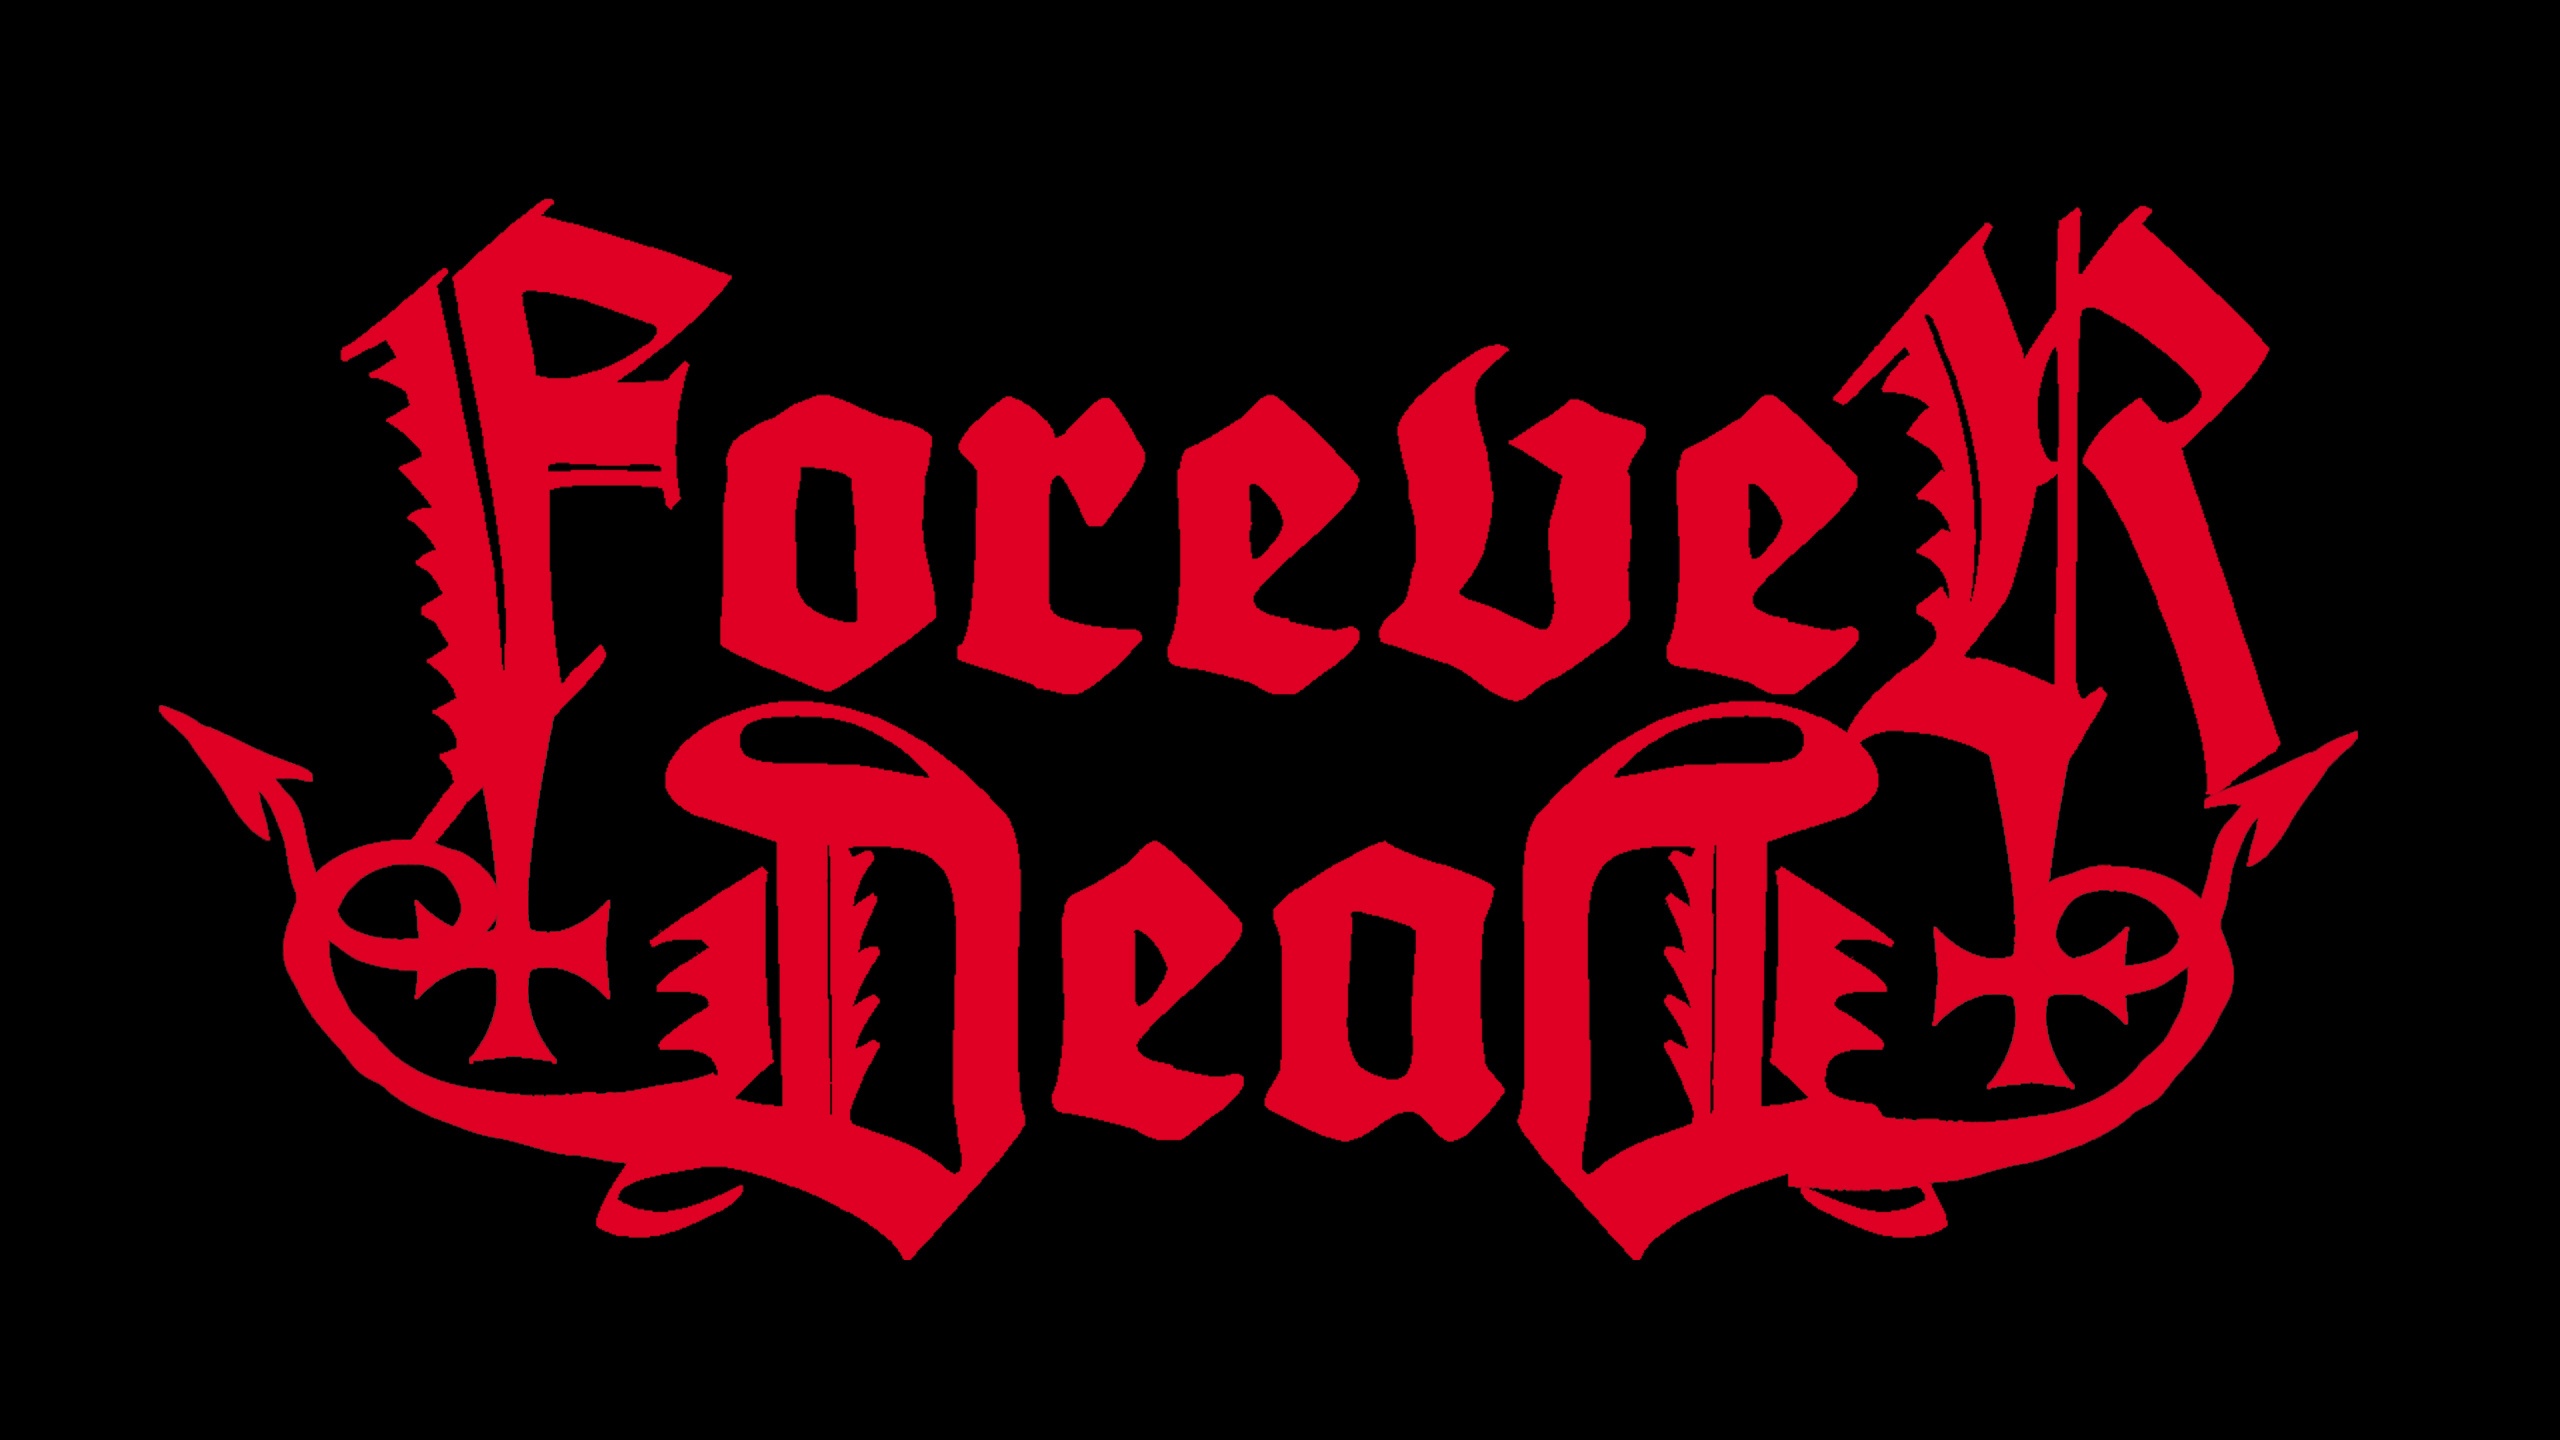 Foreverdead logo